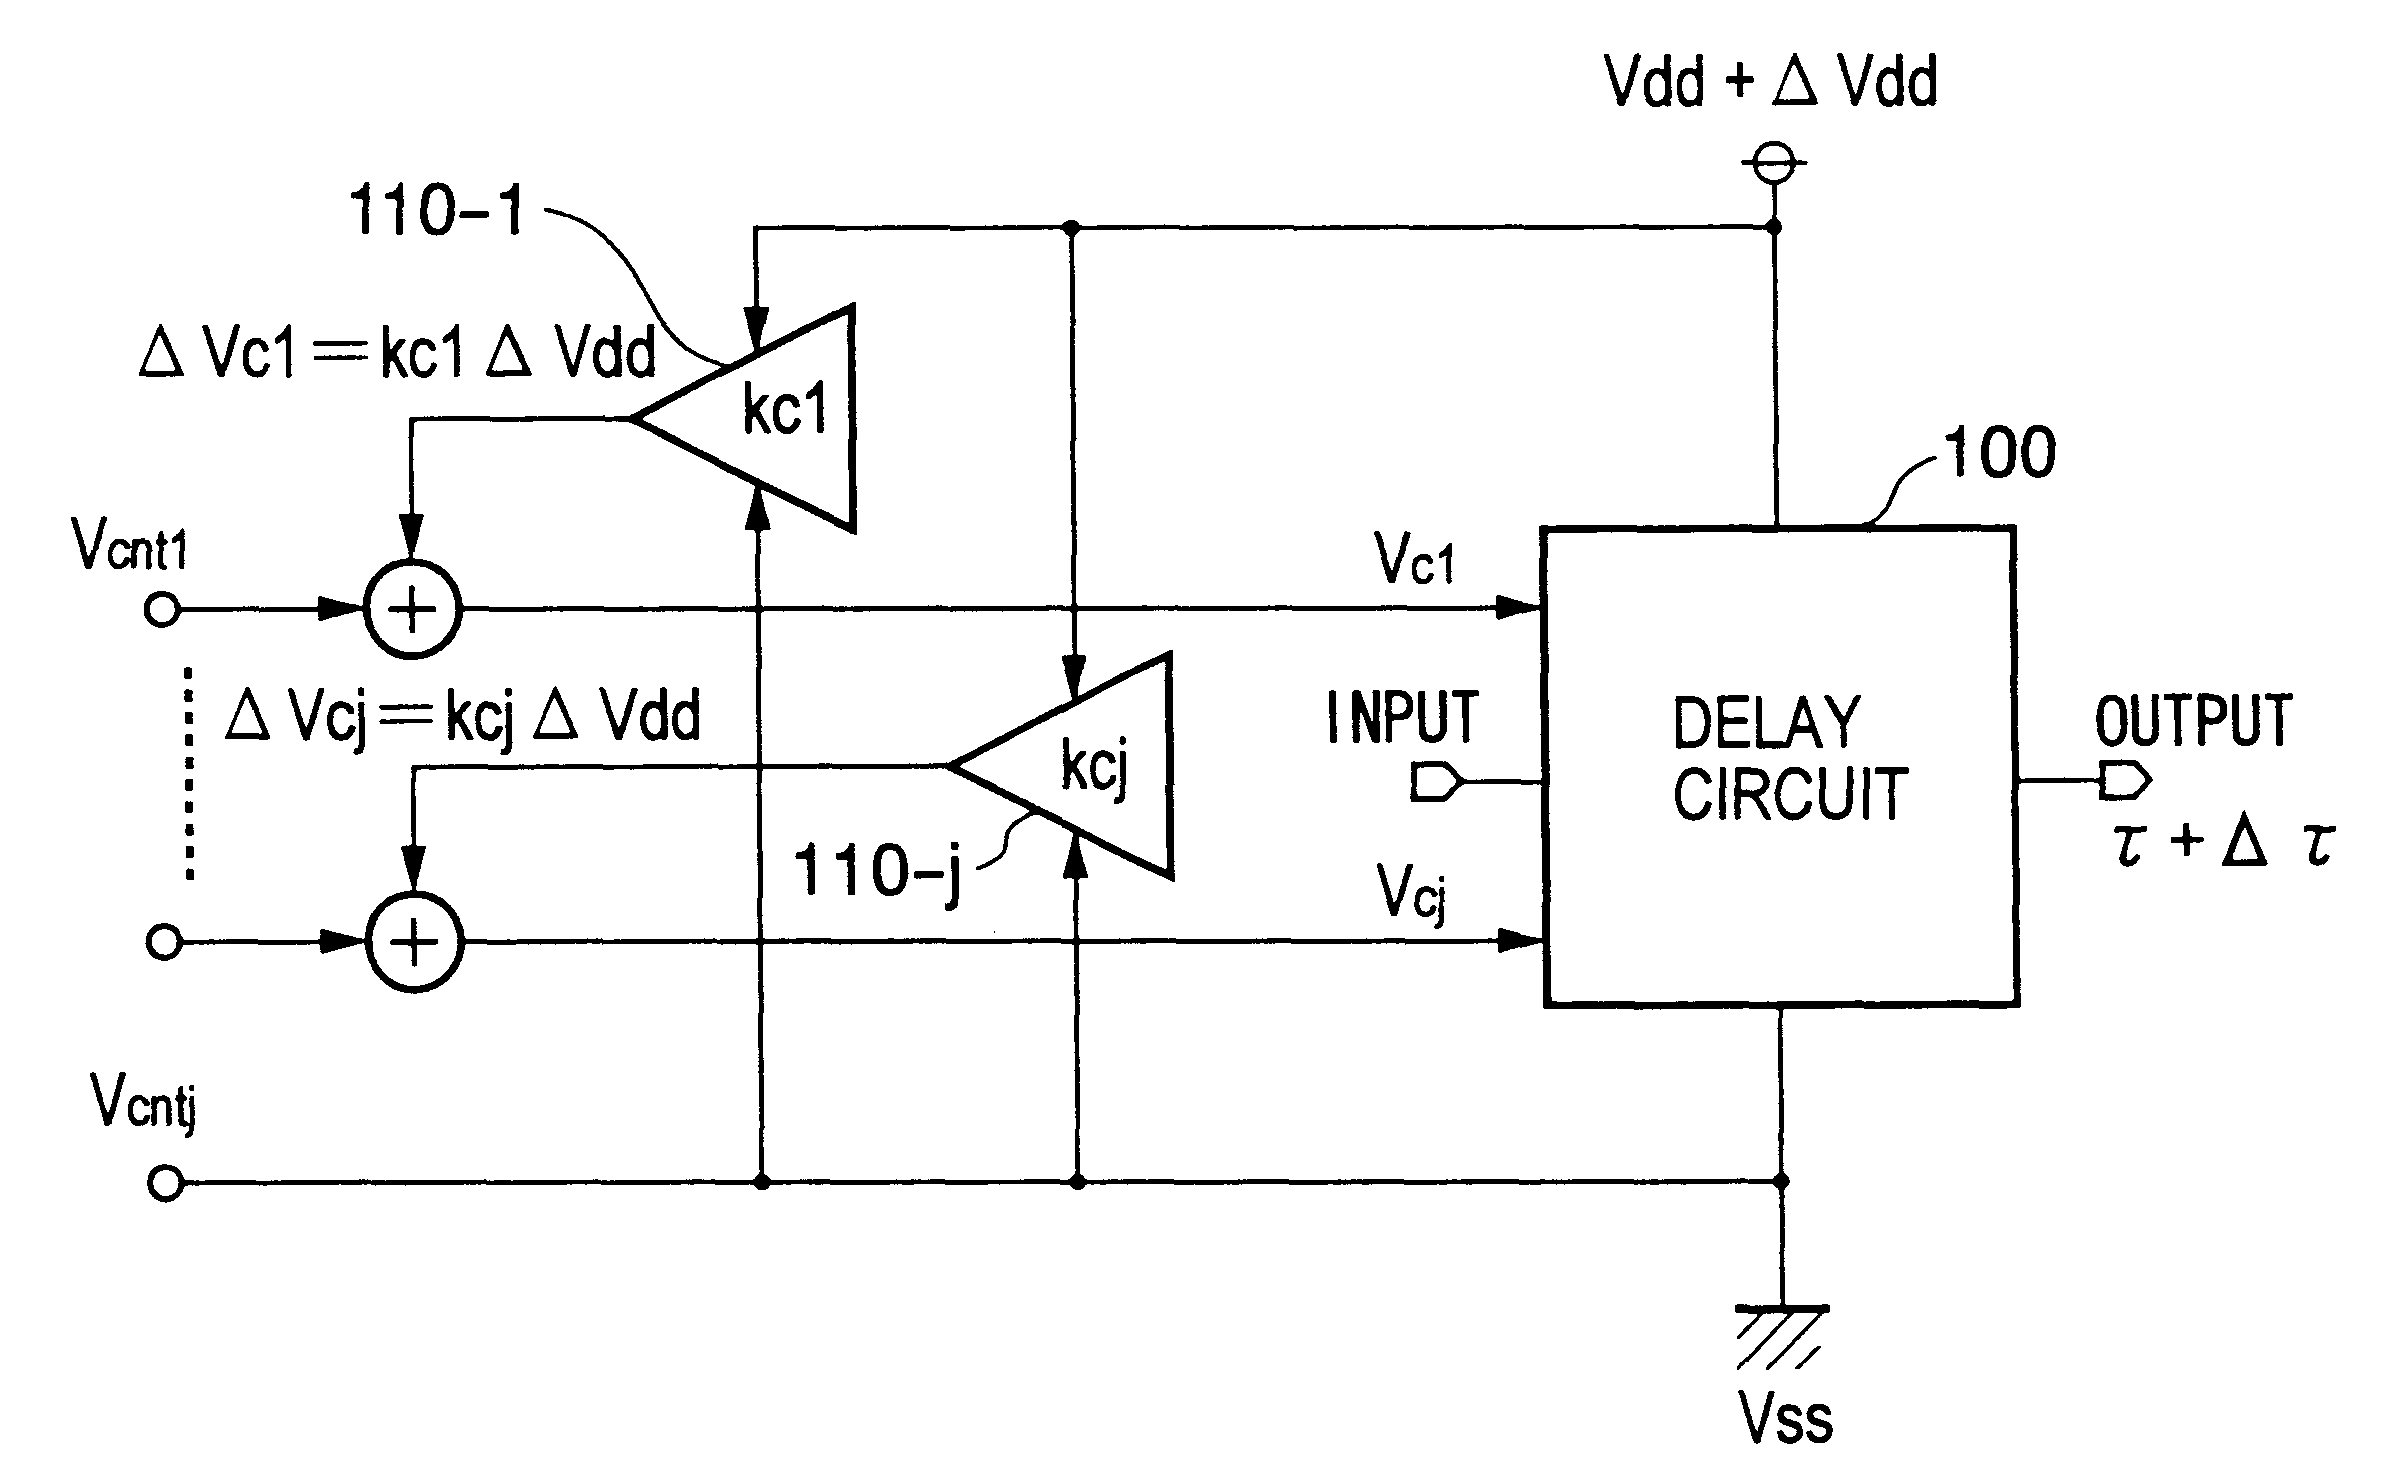 Delay circuit, voltage-controlled delay circuit, voltage-controlled oscillation circuit, delay adjustment circuit, DLL circuit, and PLL circuit